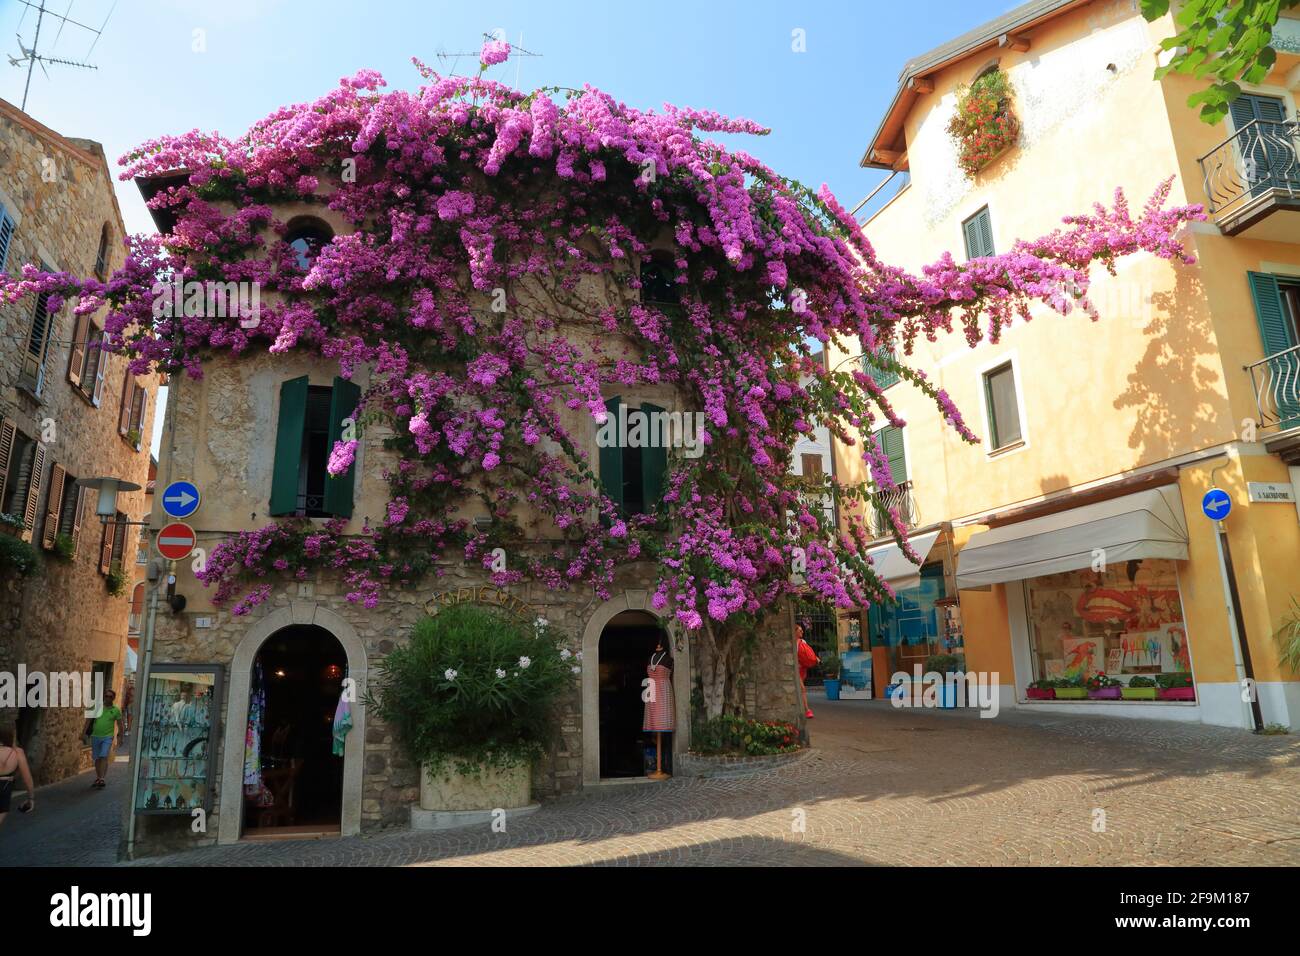 Sirmione, Lago de Garda. Flores moradas de buganvillas en la casa del casco antiguo. Lago di Garda, Gardasee, Italia Foto de stock